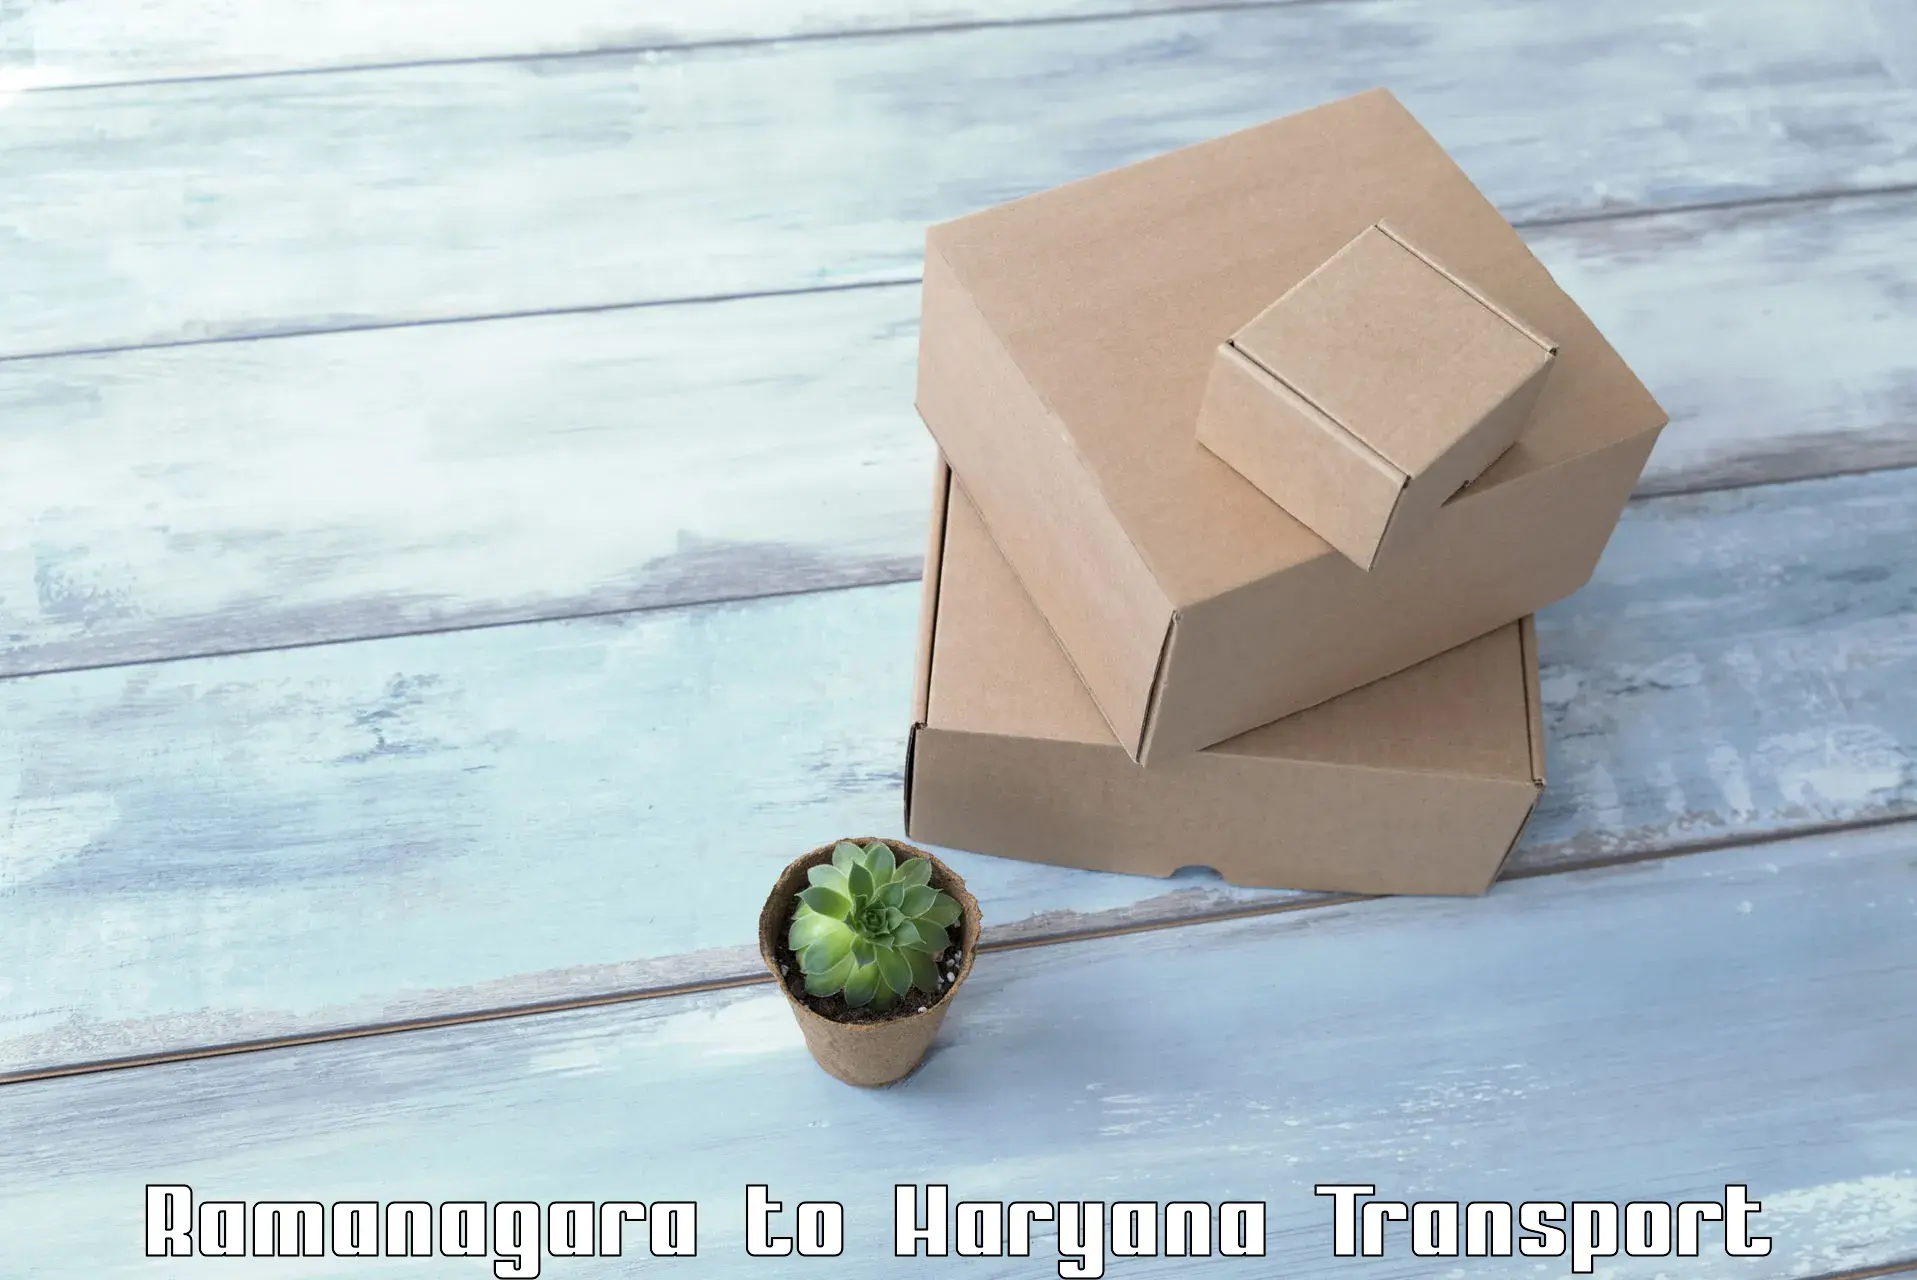 Luggage transport services Ramanagara to Narnaul